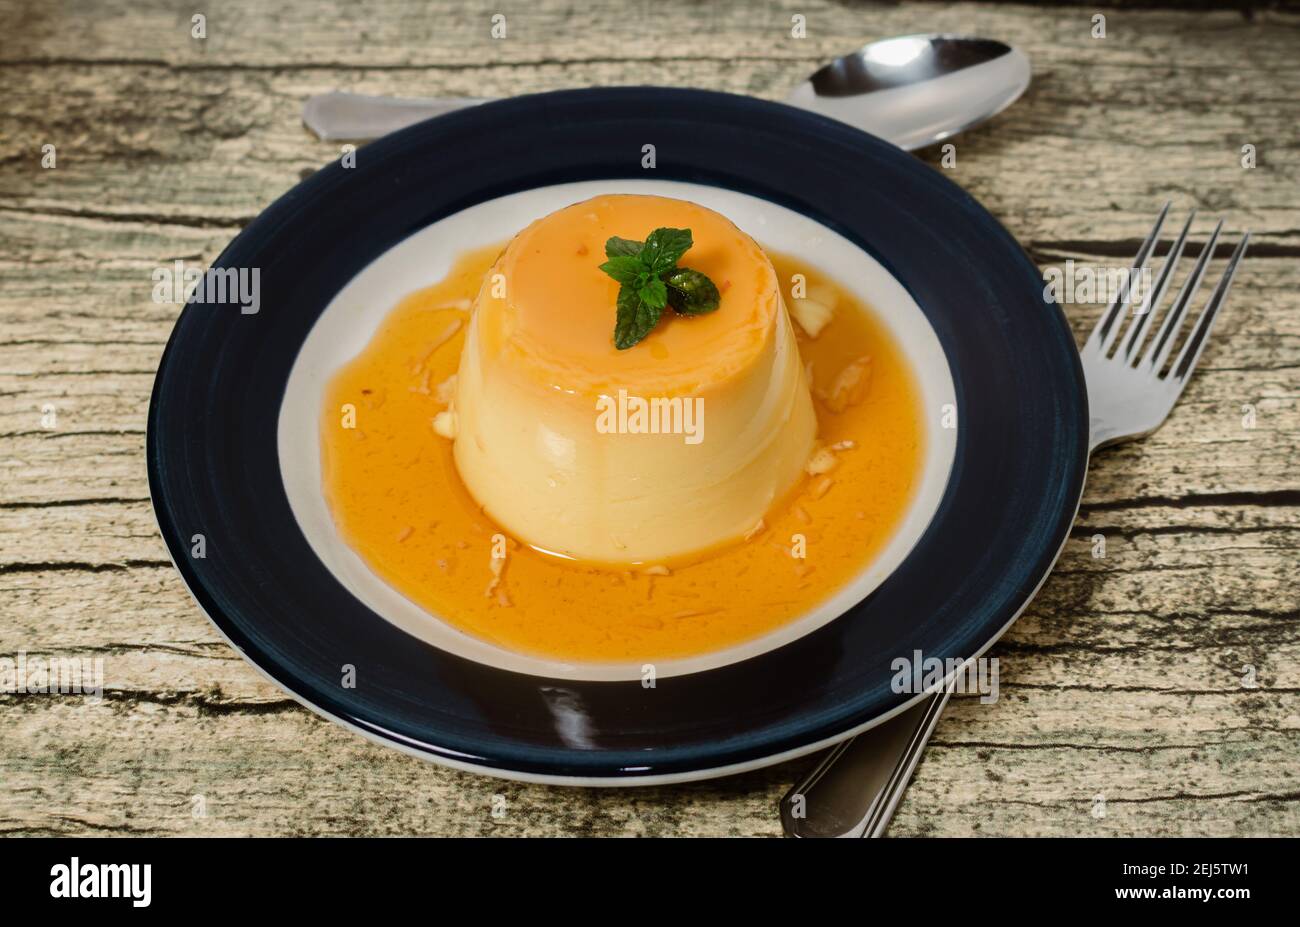 Délicieux dessert typique de l'Amérique du Sud appelé Flan, fait avec des œufs, du lait, de la vanille et aromatisé au caramel. Concept de nourriture ethnique et de nourriture de chaleur Banque D'Images